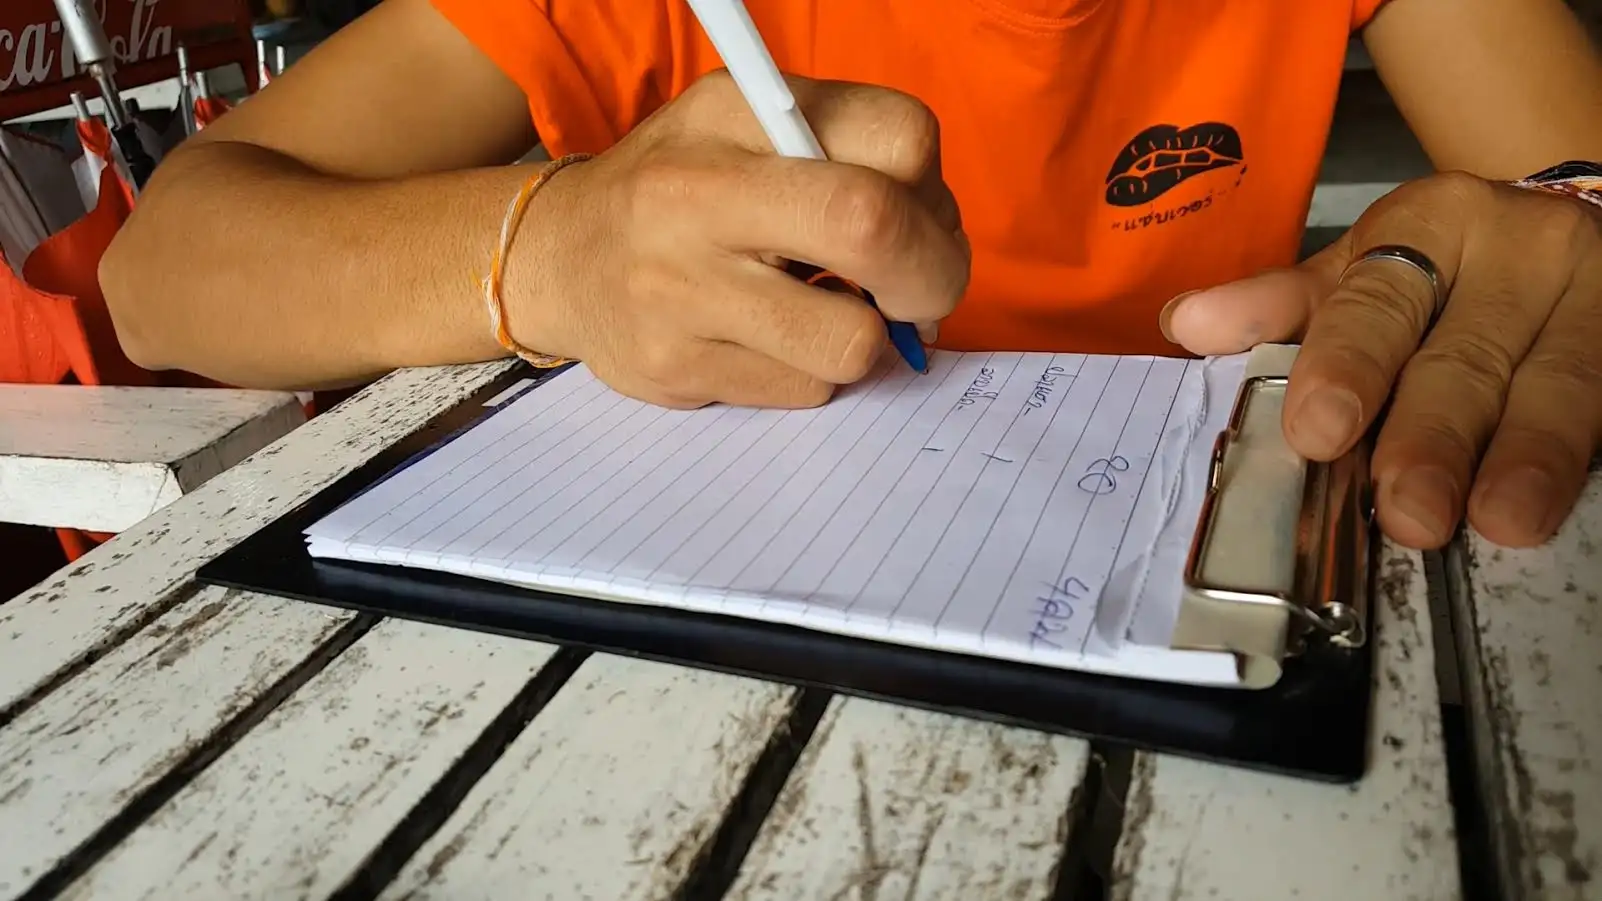 พันนี้กะยัง เด็กเสิร์ฟชาวลาวพลิกสมุดเขียนภาษาไทยรับออเดอร์อย่างคล่องแคล่ว